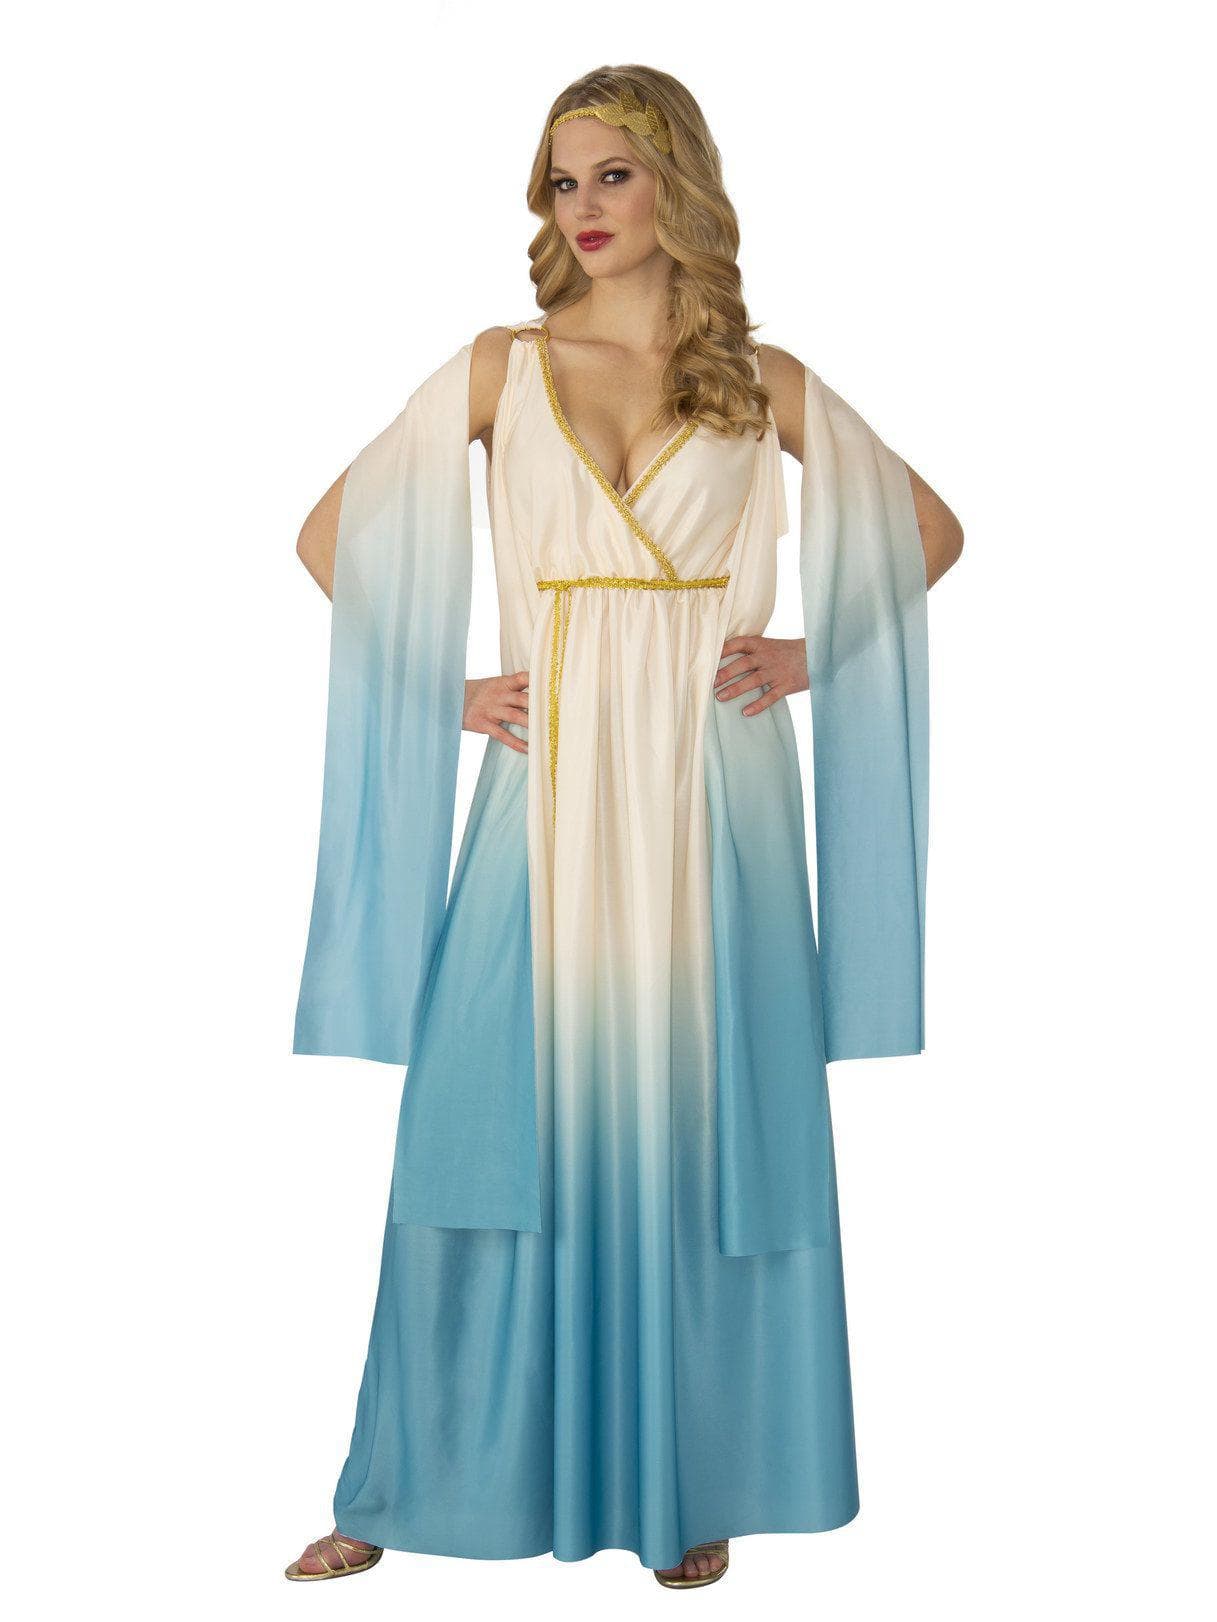 Adult Greek Goddess Costume - costumes.com